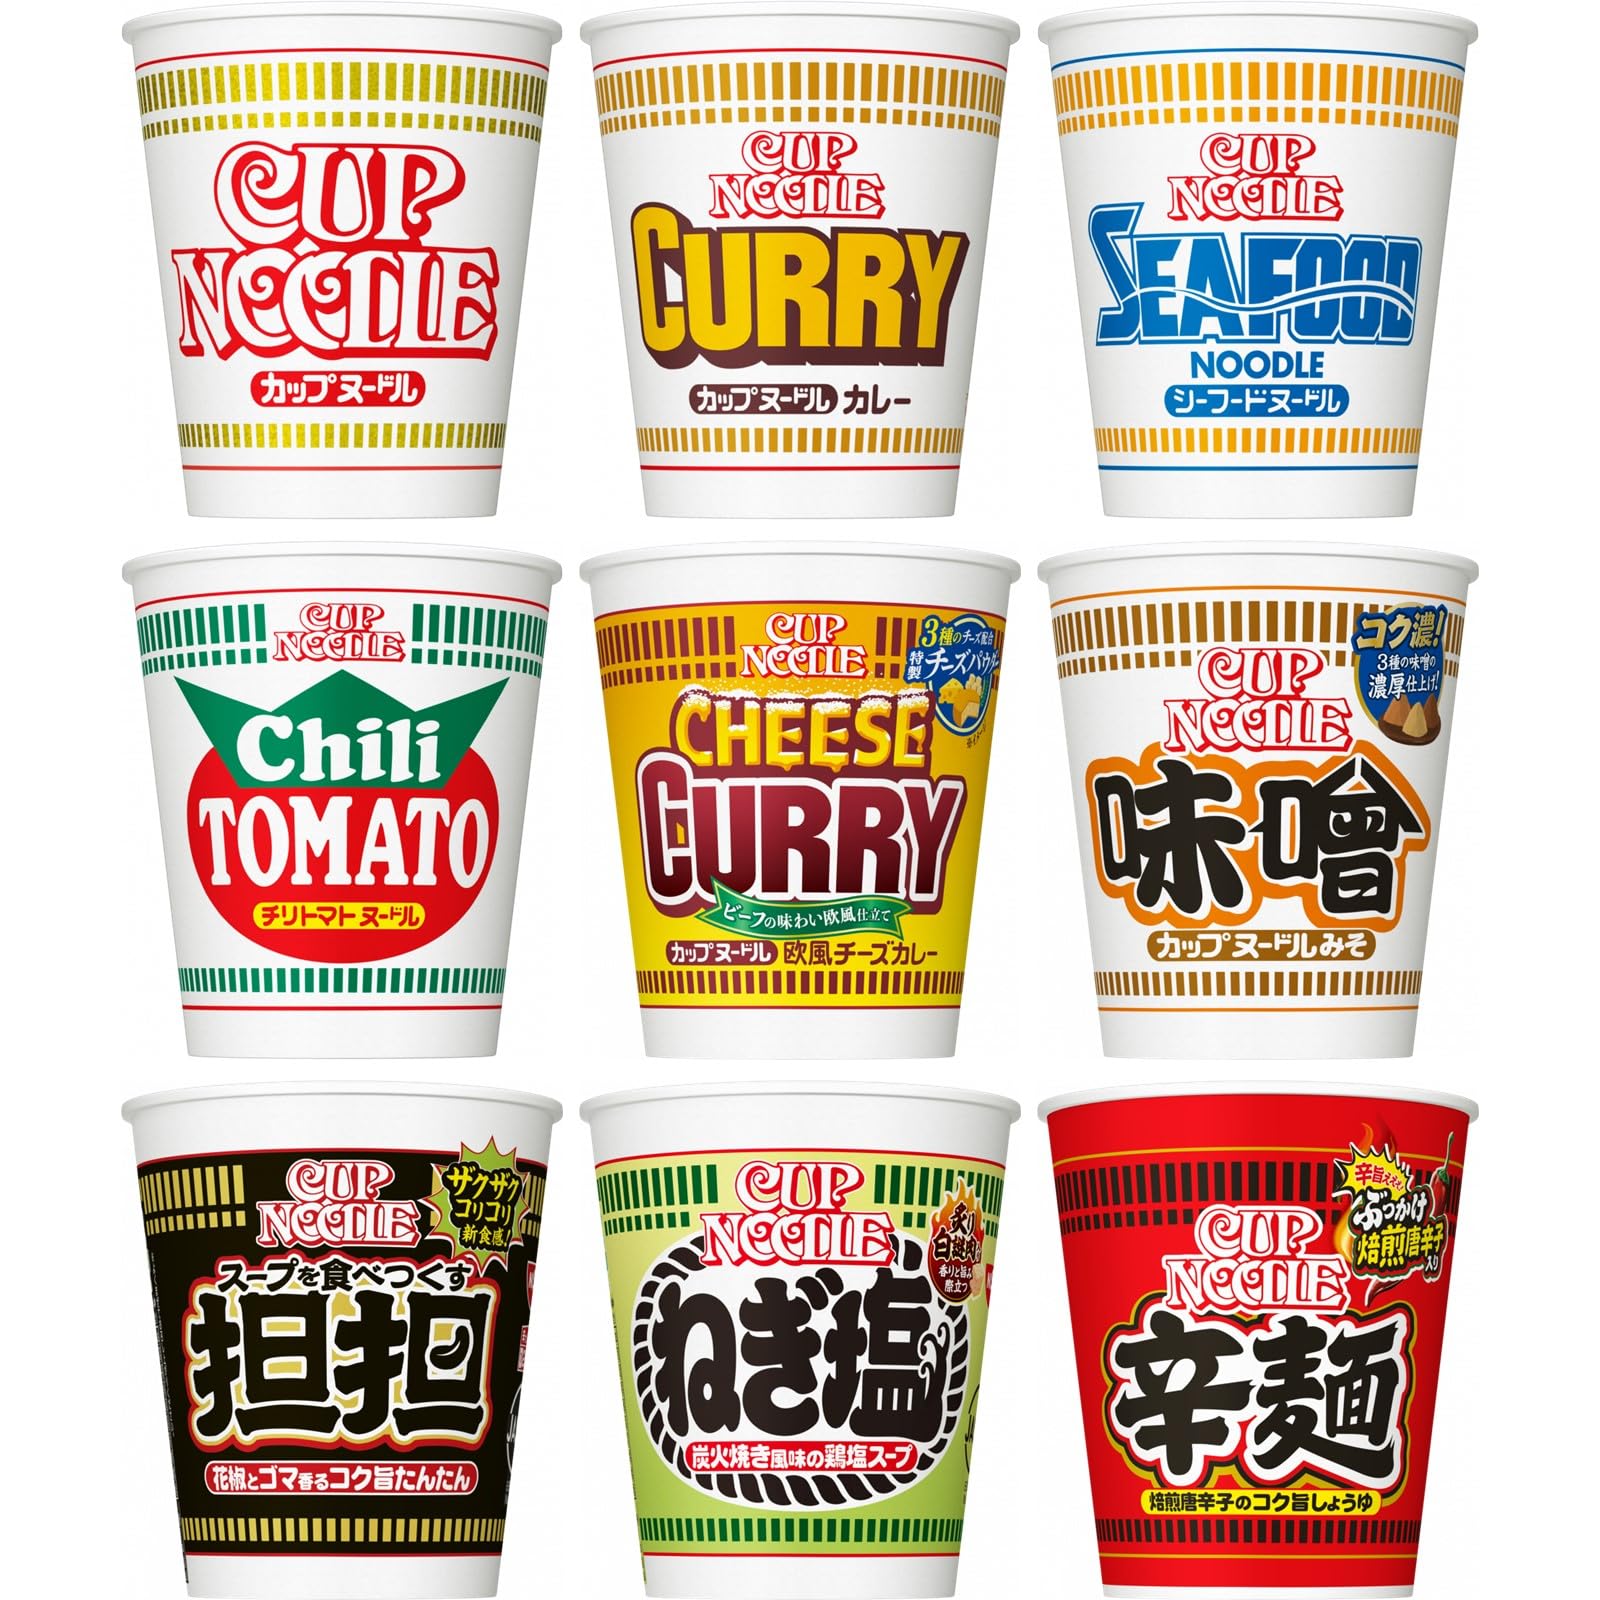 【】日清食品 カップヌードル 9種類 レギュラーサイズ バラエティ 9食 詰め合わせセット 【カップ麺 箱買い】